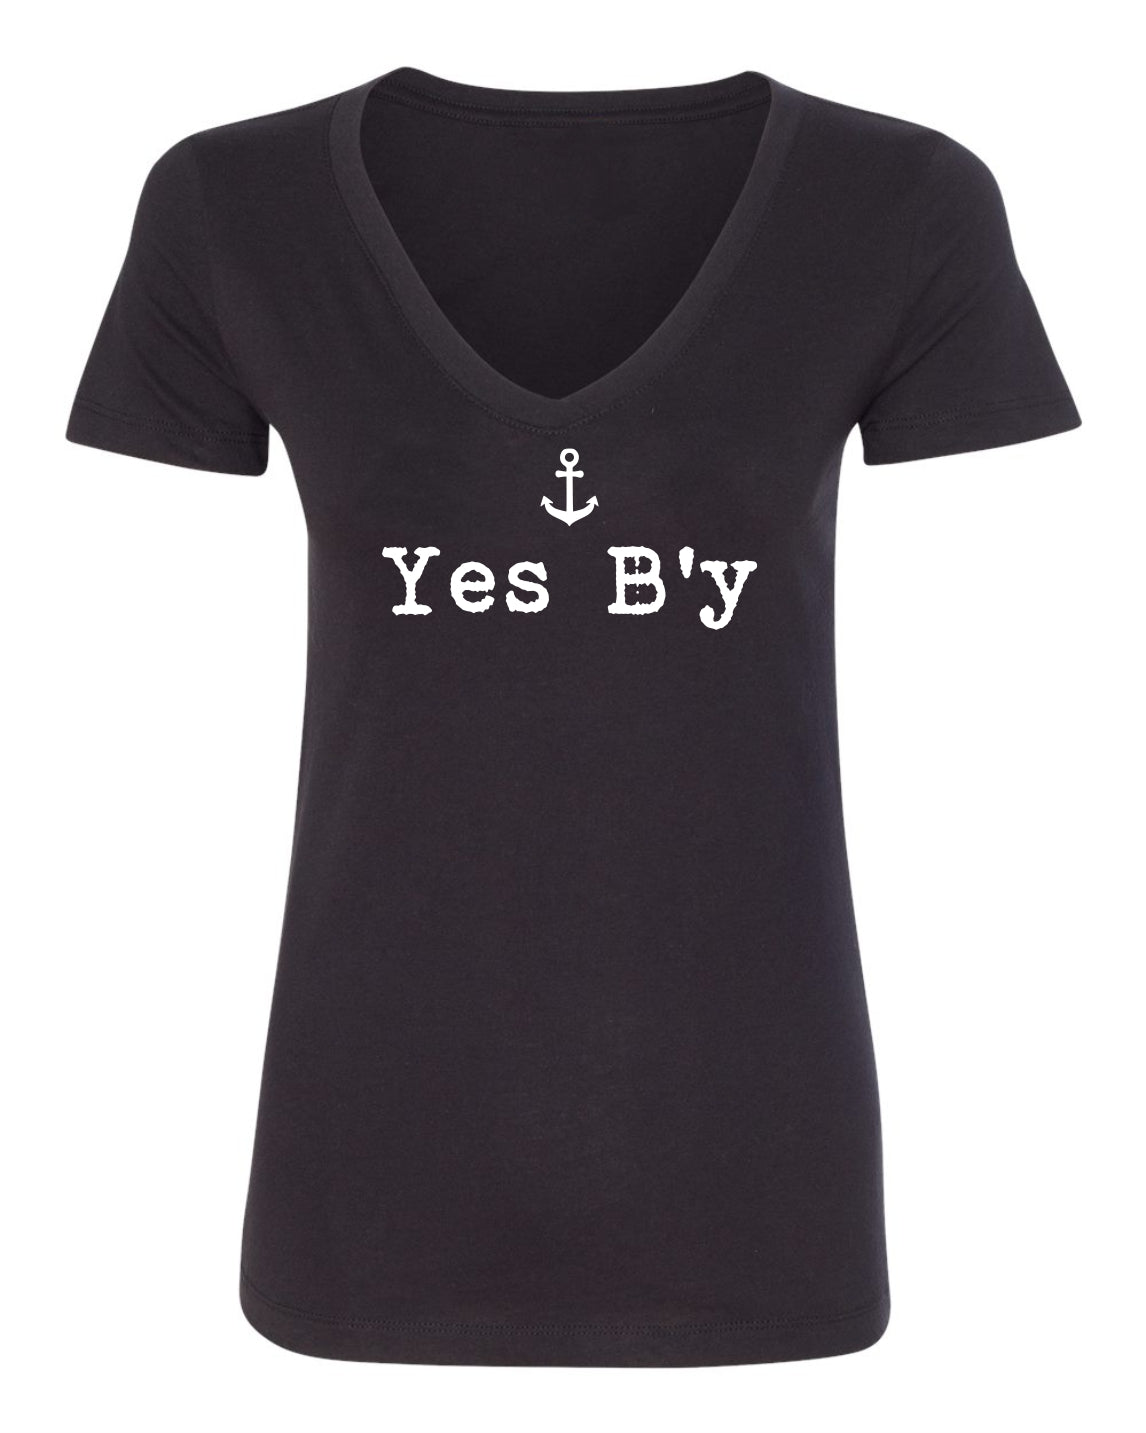 "Yes B'y" T-Shirt